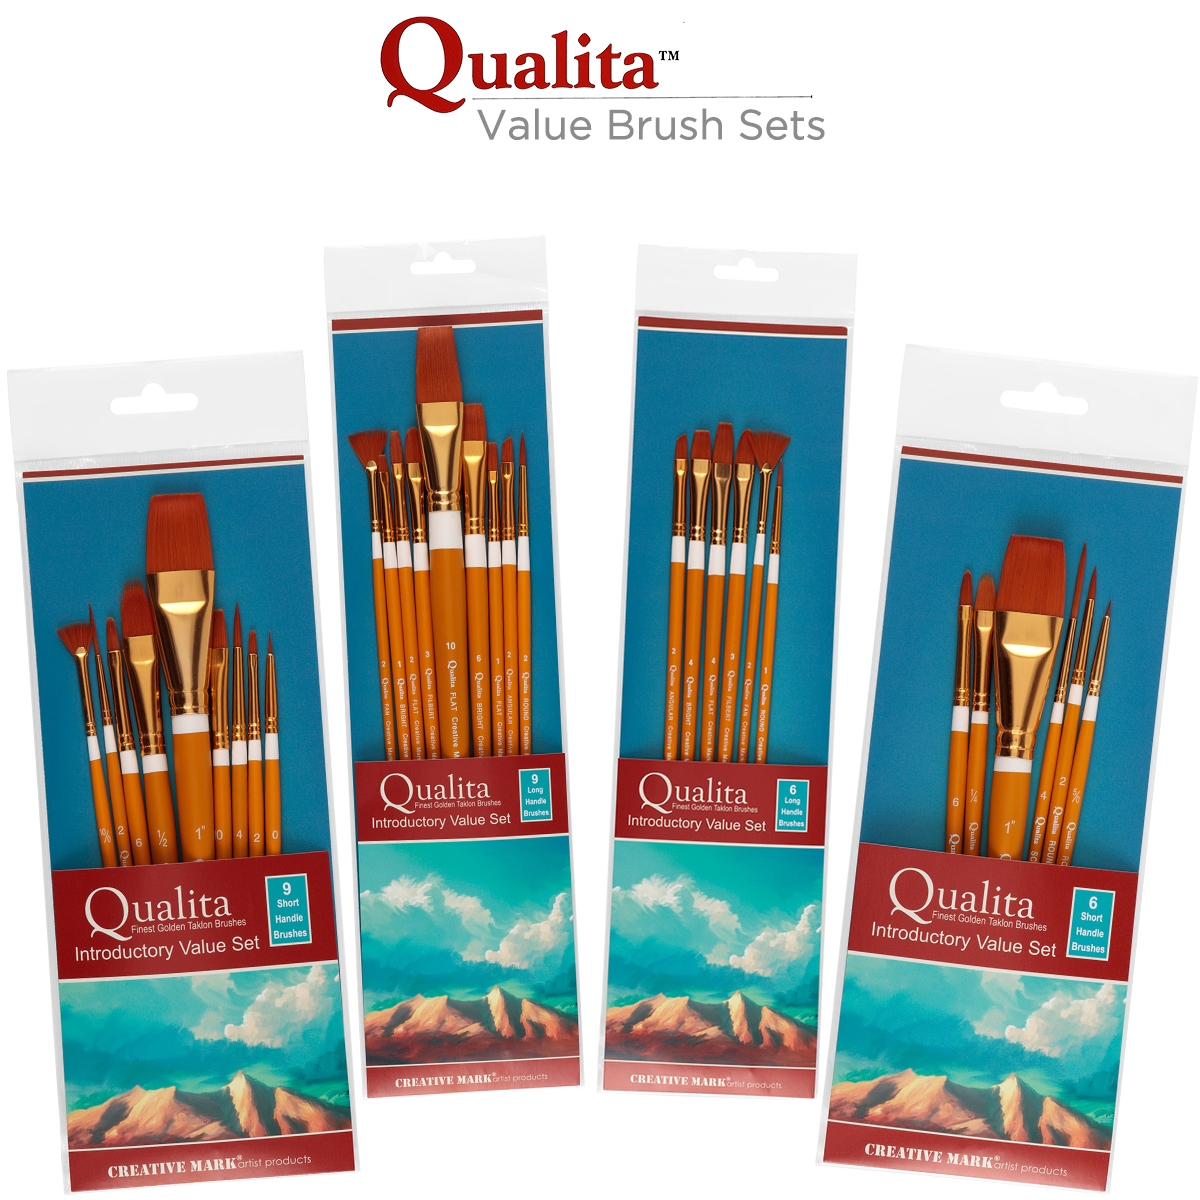 Qualita Golden Taklon Value Brush Sets